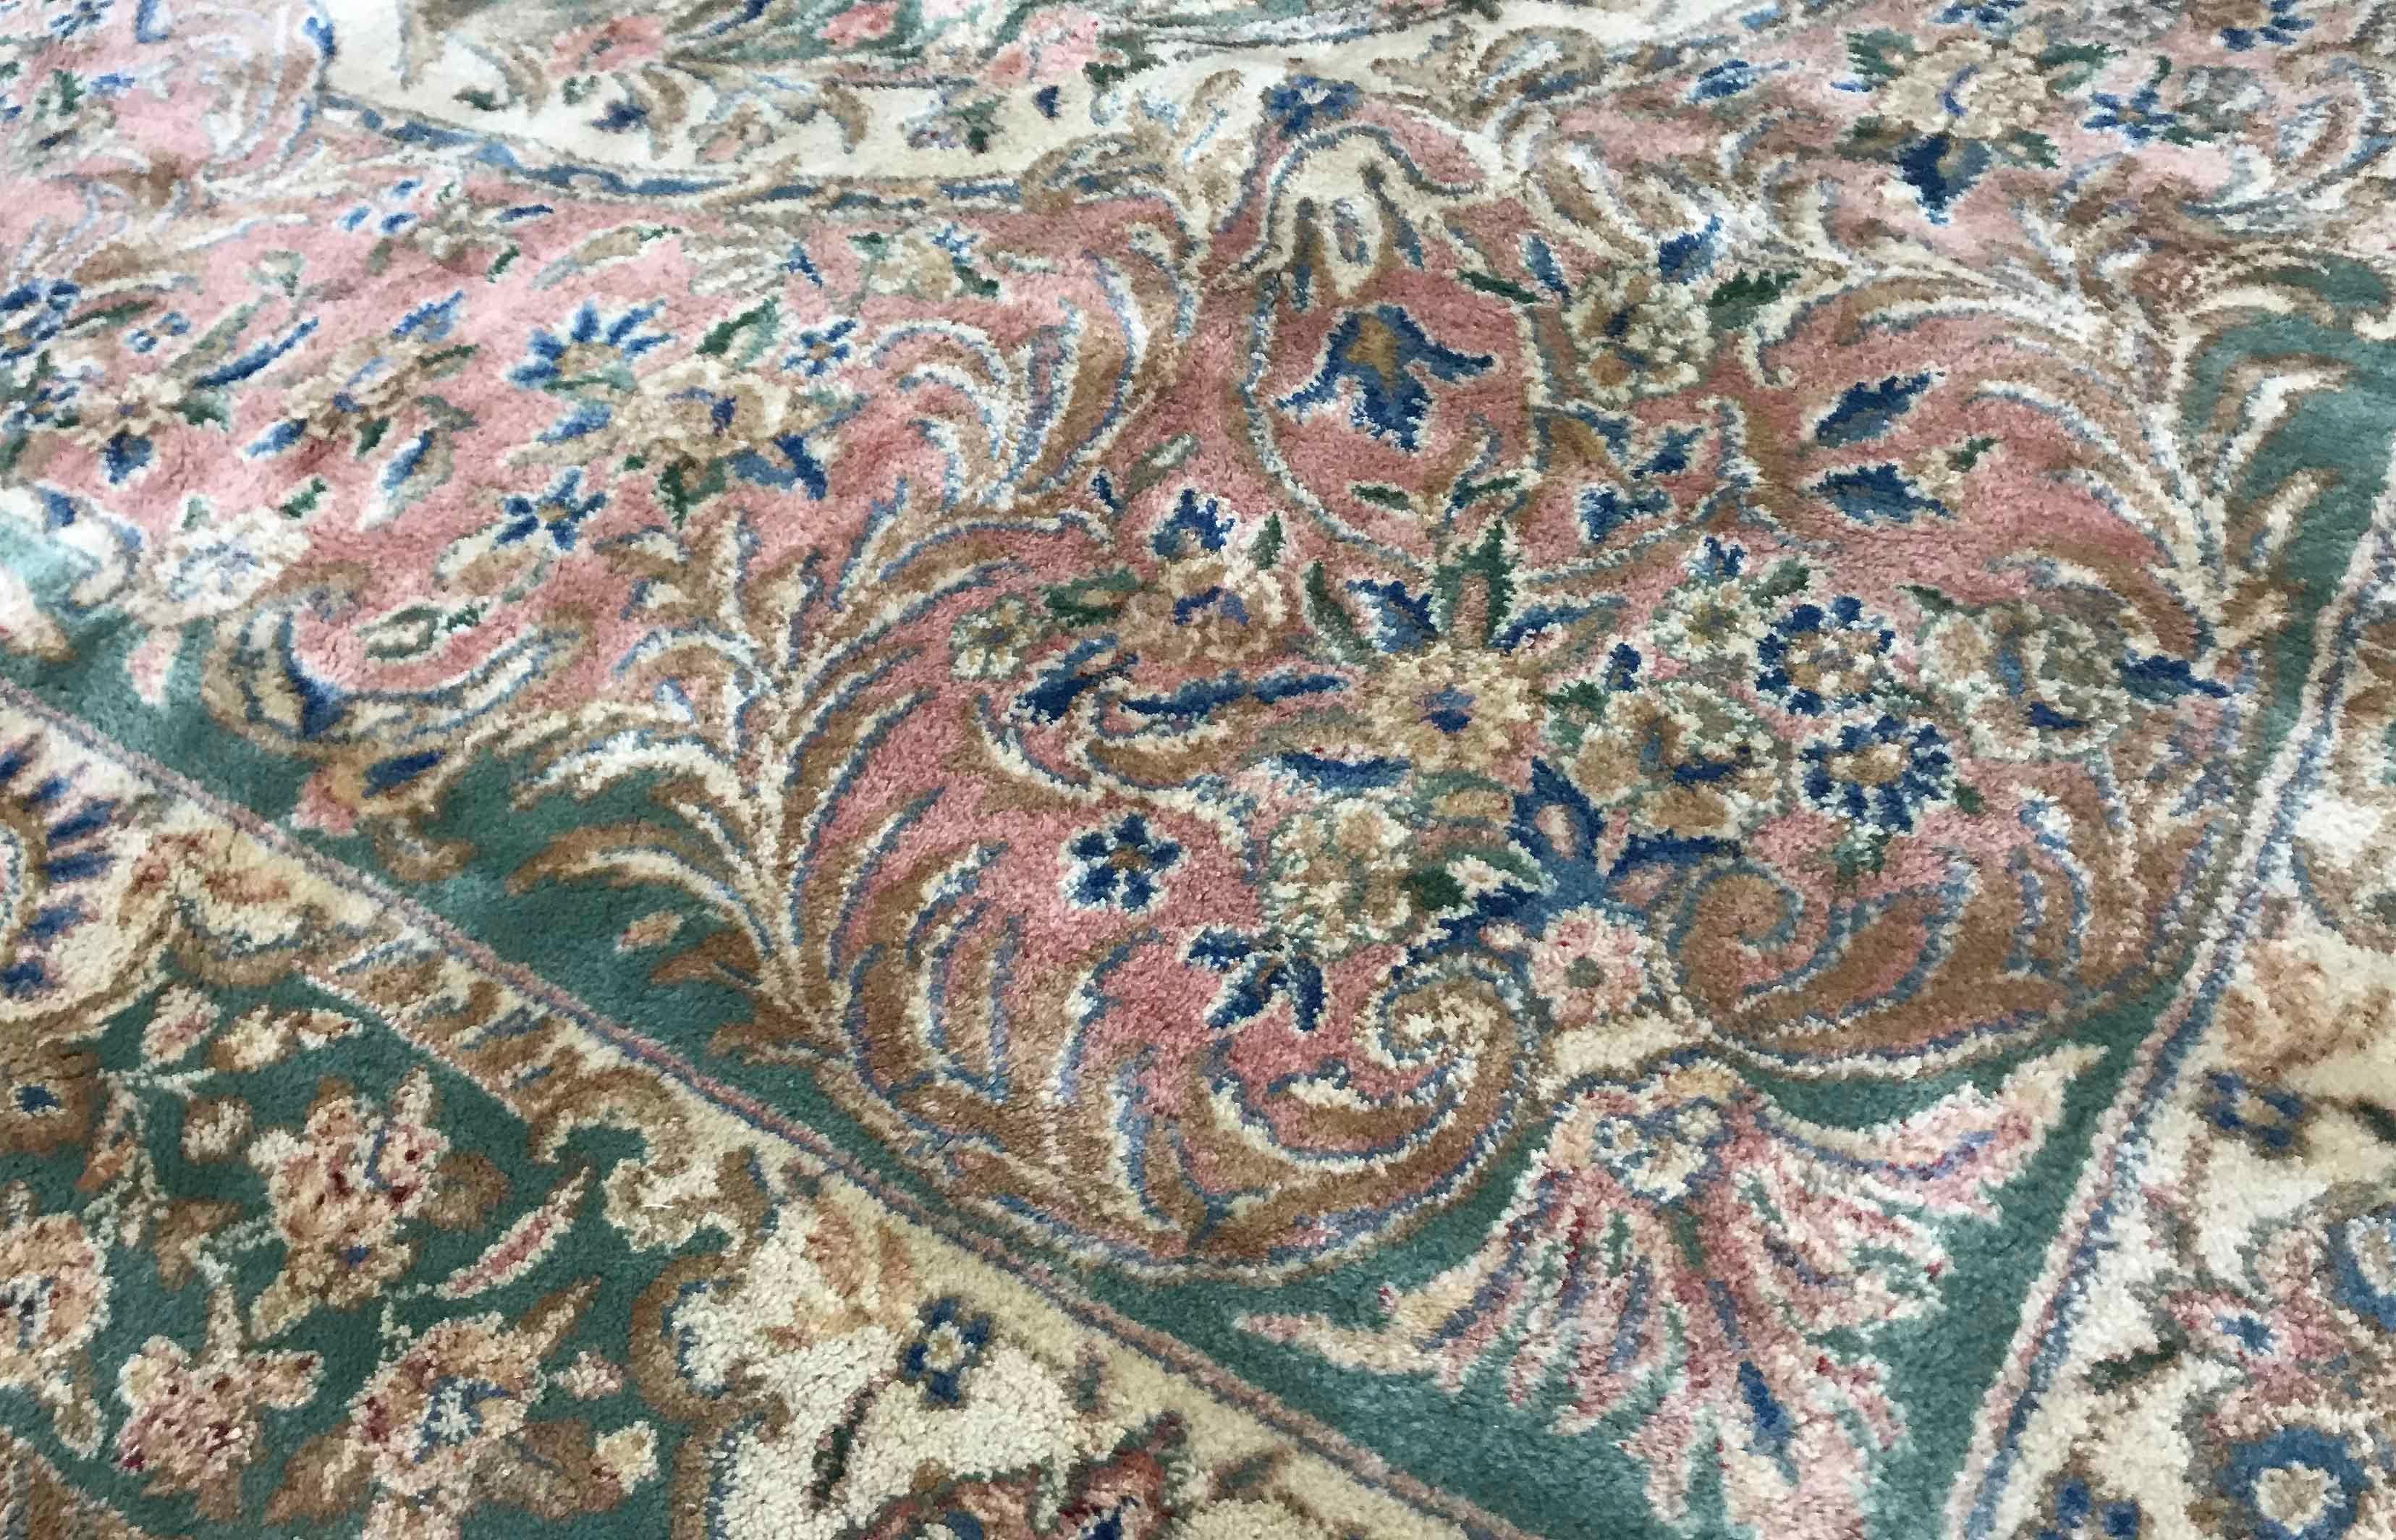 Alter persischer Kerman-Teppich, um 1940. Ein weicher und doch subtiler Teppich, der sanfte Farben mit einem detaillierten Design kombiniert. Das zentrale grüne Feld mit Medaillon ist von rosafarbenen Tönen und einer elfenbeinfarbenen Bordüre